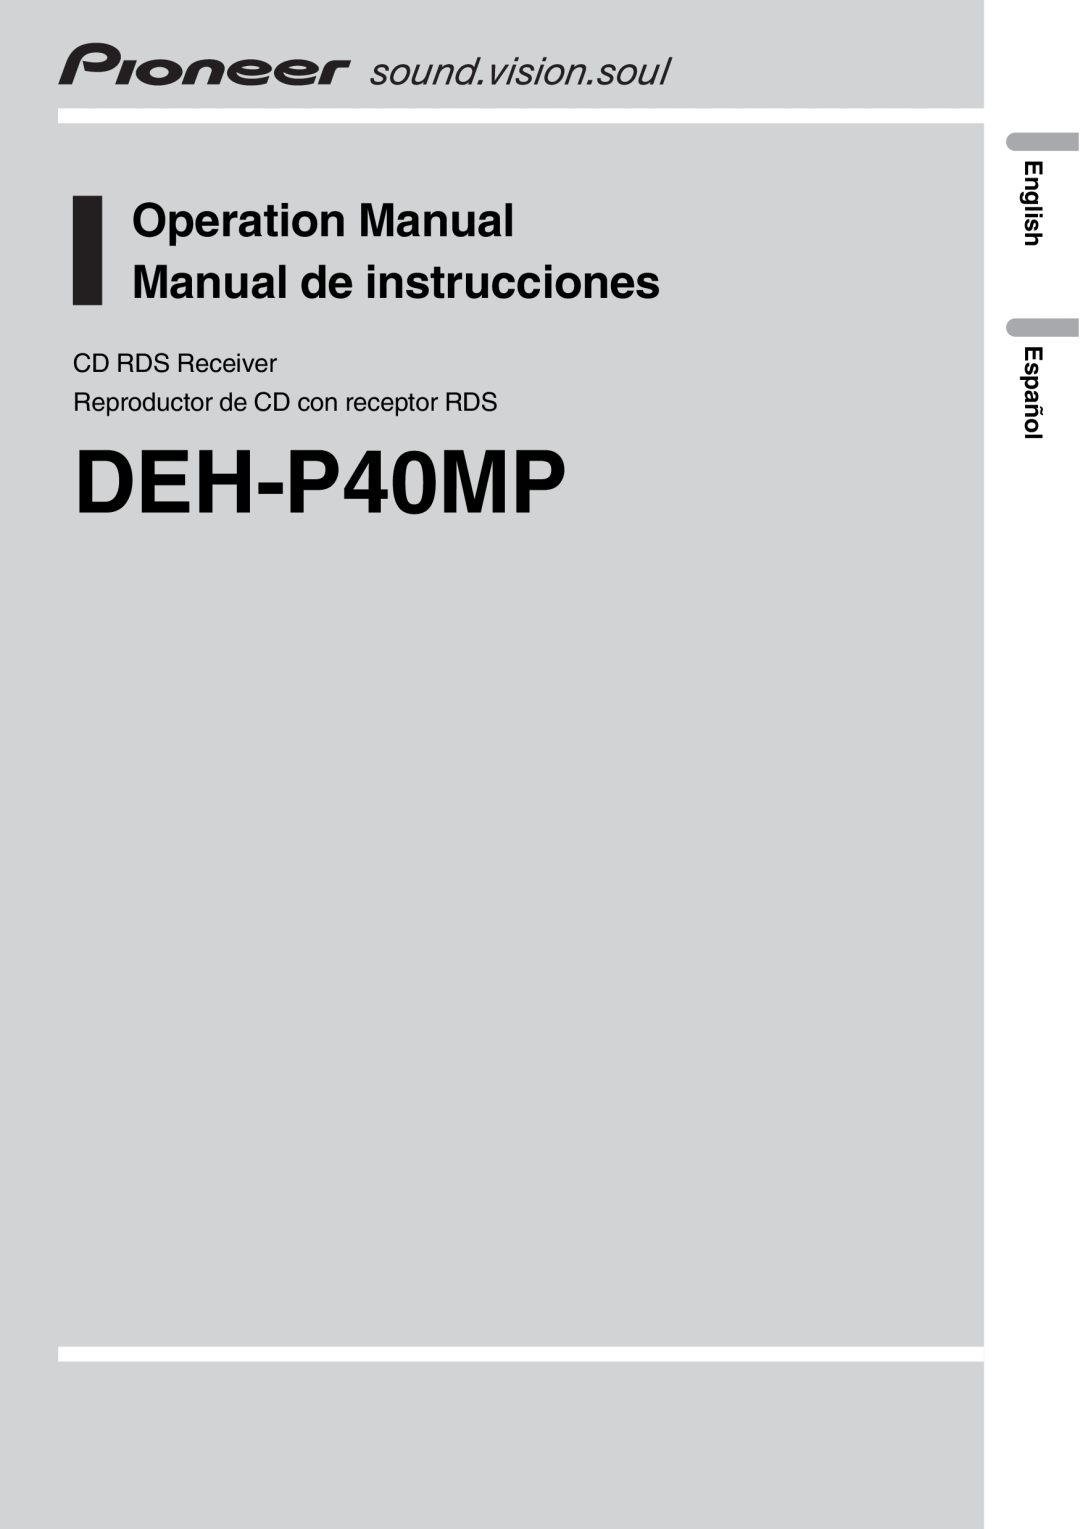 Pioneer RDS DEH-P40MP operation manual CD RDS Receiver, Reproductor de CD con receptor RDS, English Español 